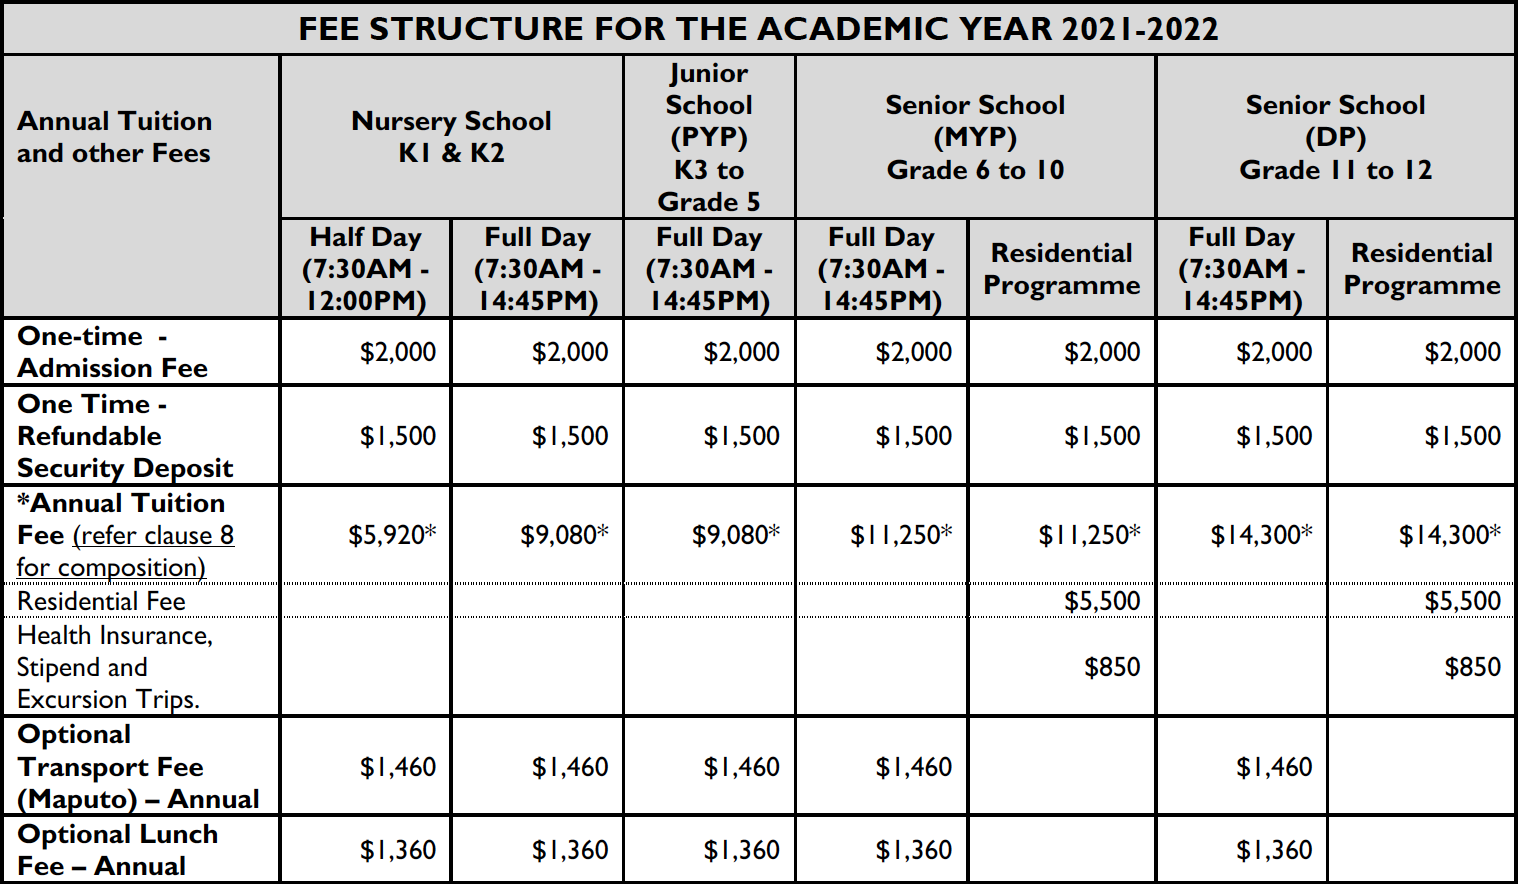 AKA Maputo 2021-2022 academic year fee schedule